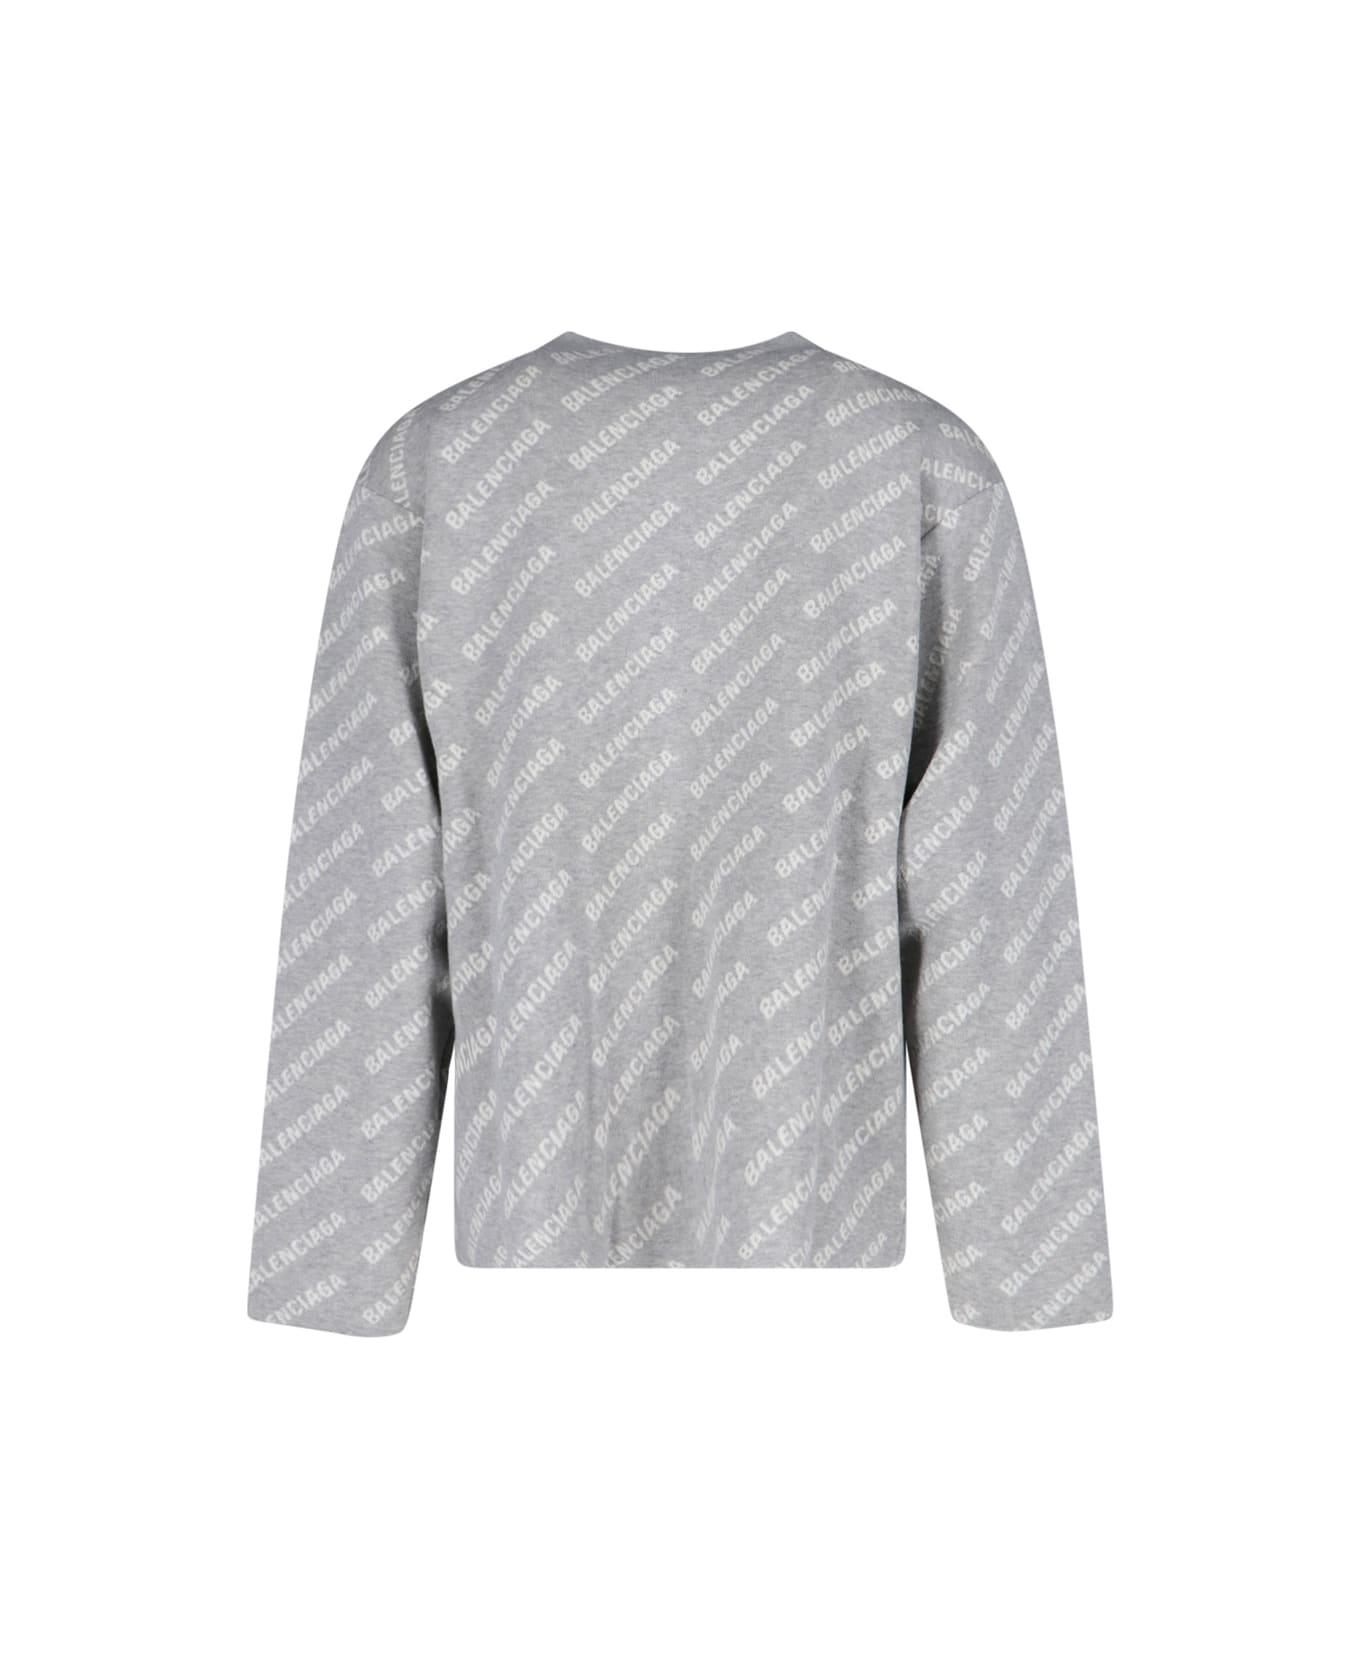 Balenciaga Sweater - Grigio e Bianco